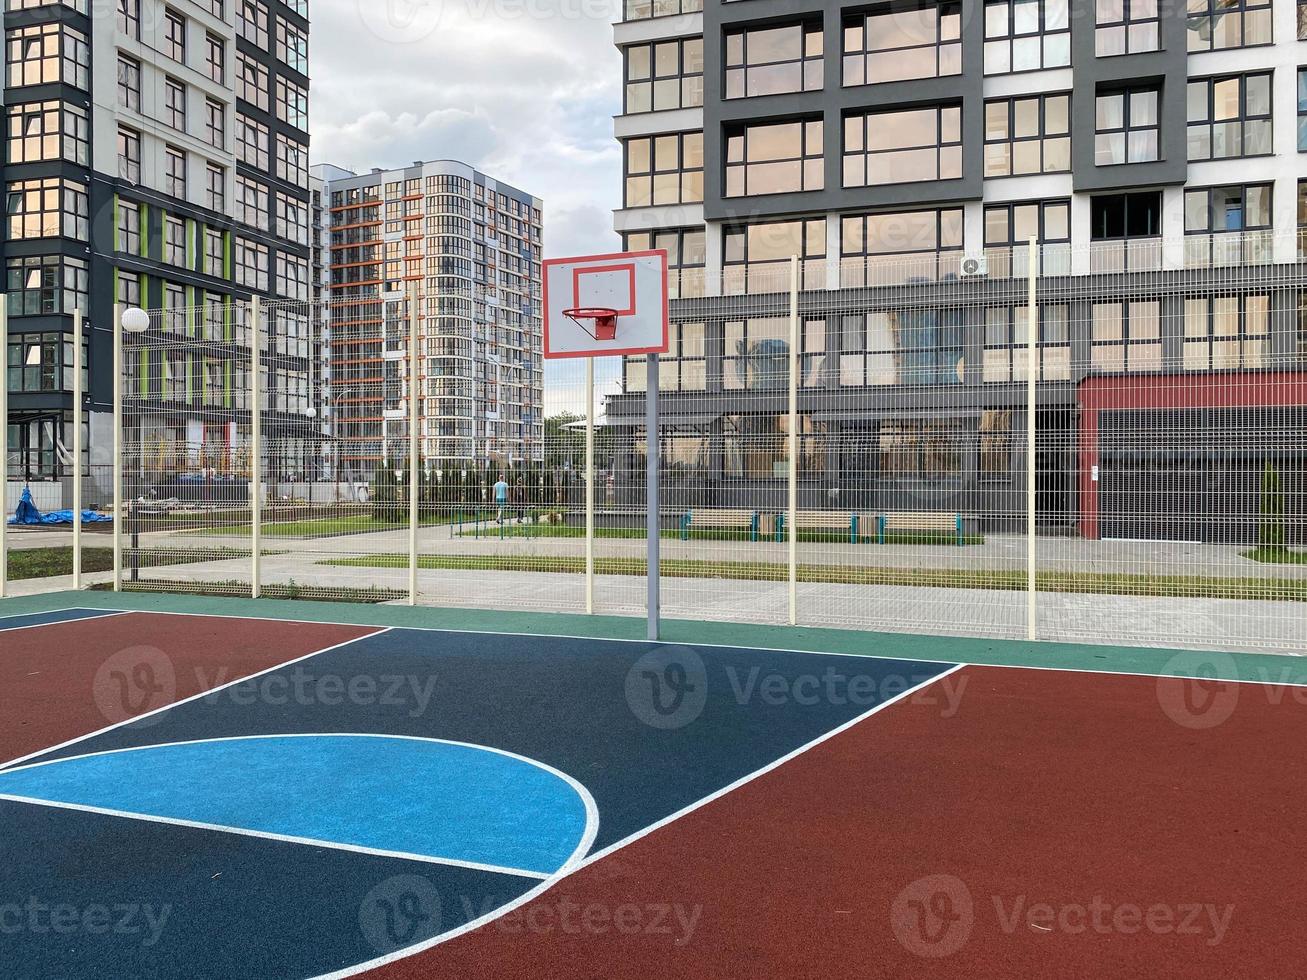 pubblico multifunzionale città terreno di gioco con tartan superficie nel il parco è Usato per giocare pallacanestro calcio floorball obiettivi cesti foto